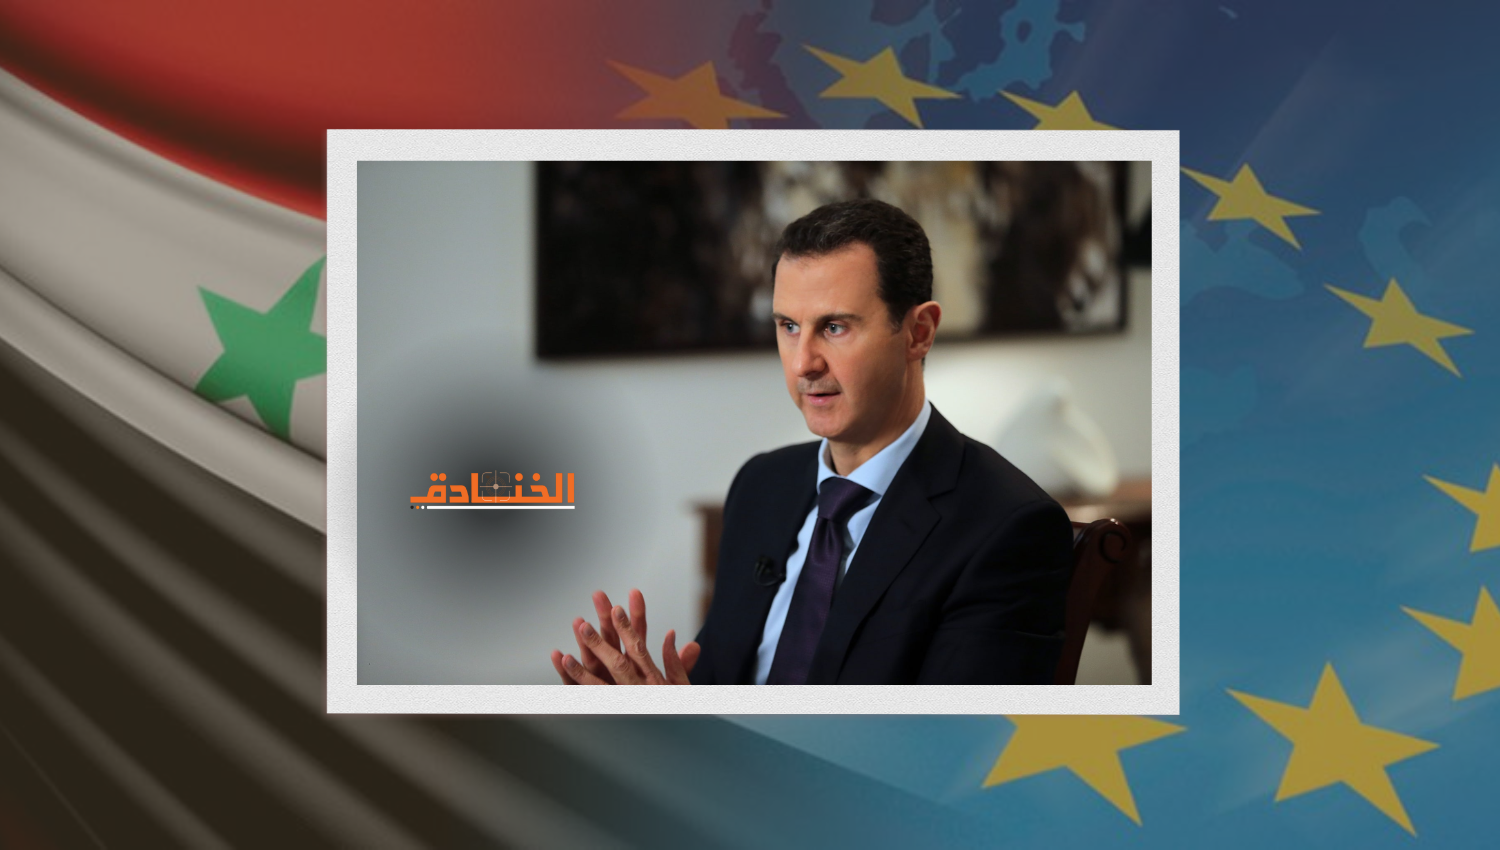 تغييرات كبيرة في موقف الاتحاد الأوروبي تجاه سوريا